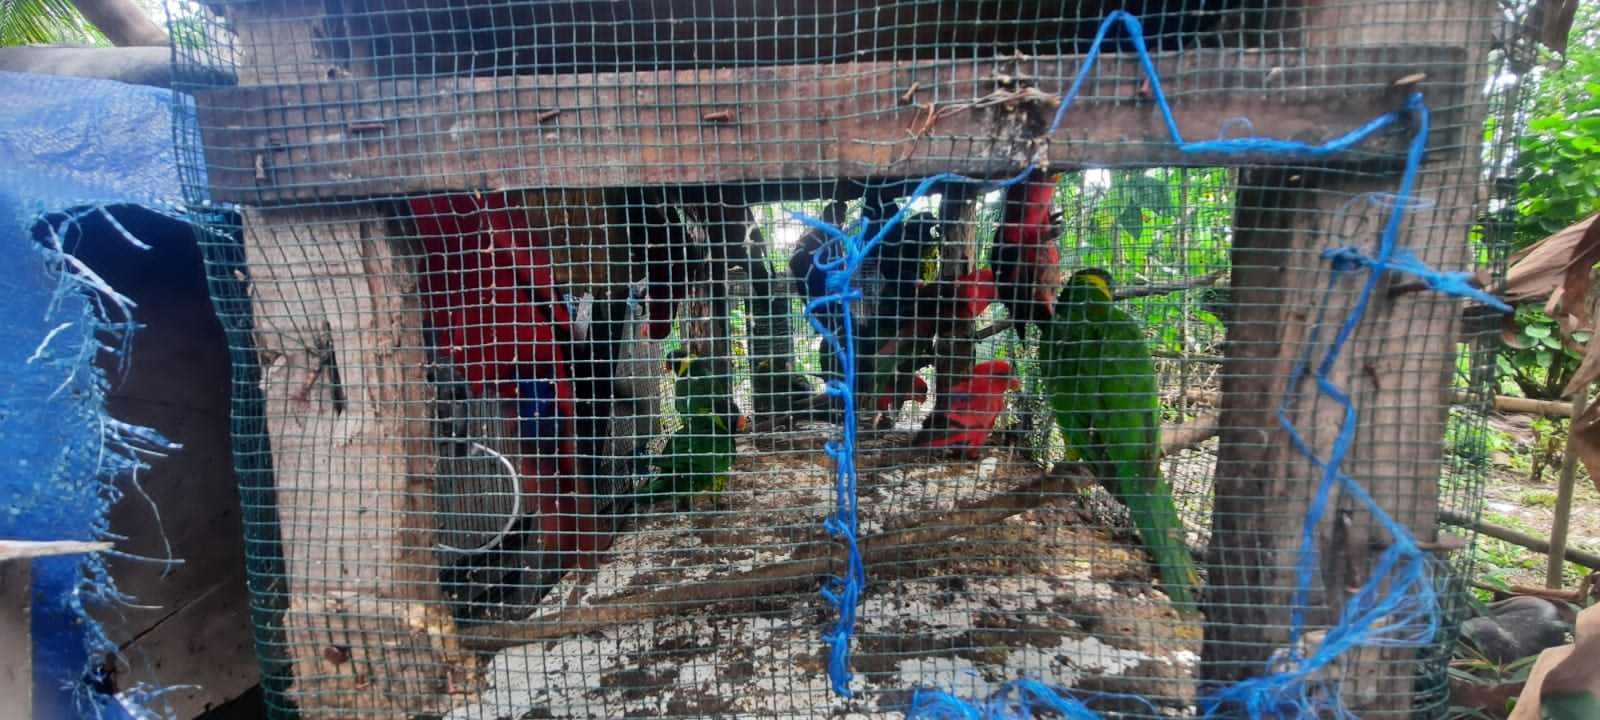 Burung nuri maluku berhasil diamankan dari rumah warga. | Foto: Dok. BKSDA Maluku